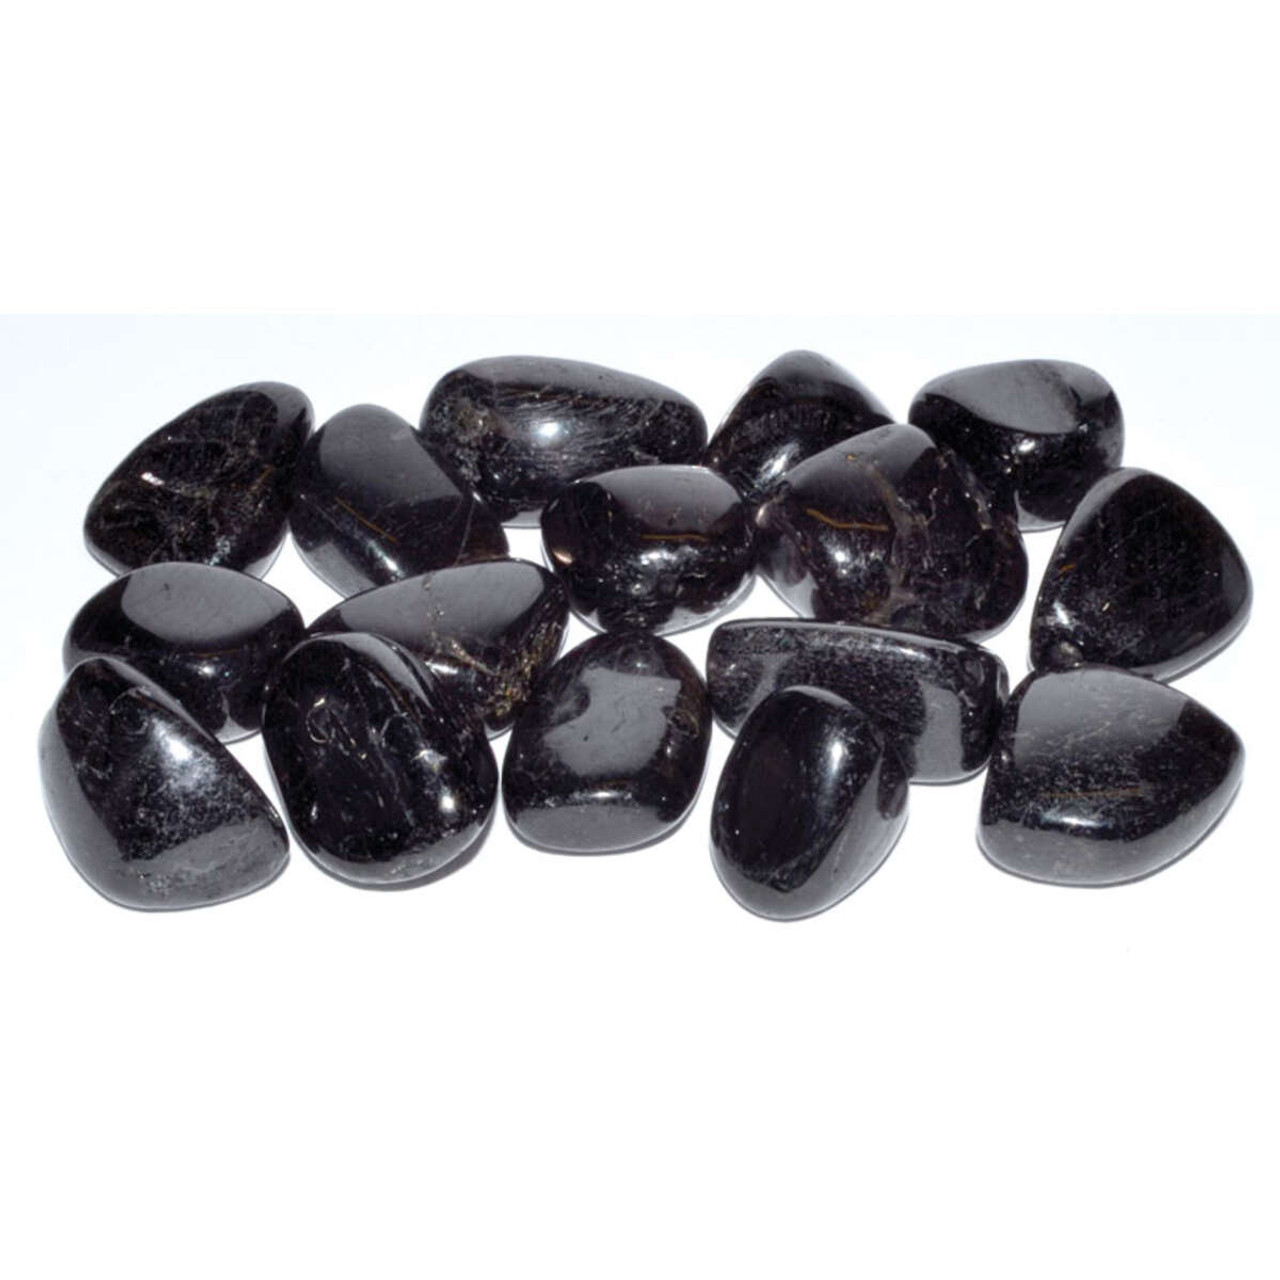 Hypersthene Tumbled Stones 1/4 lb.